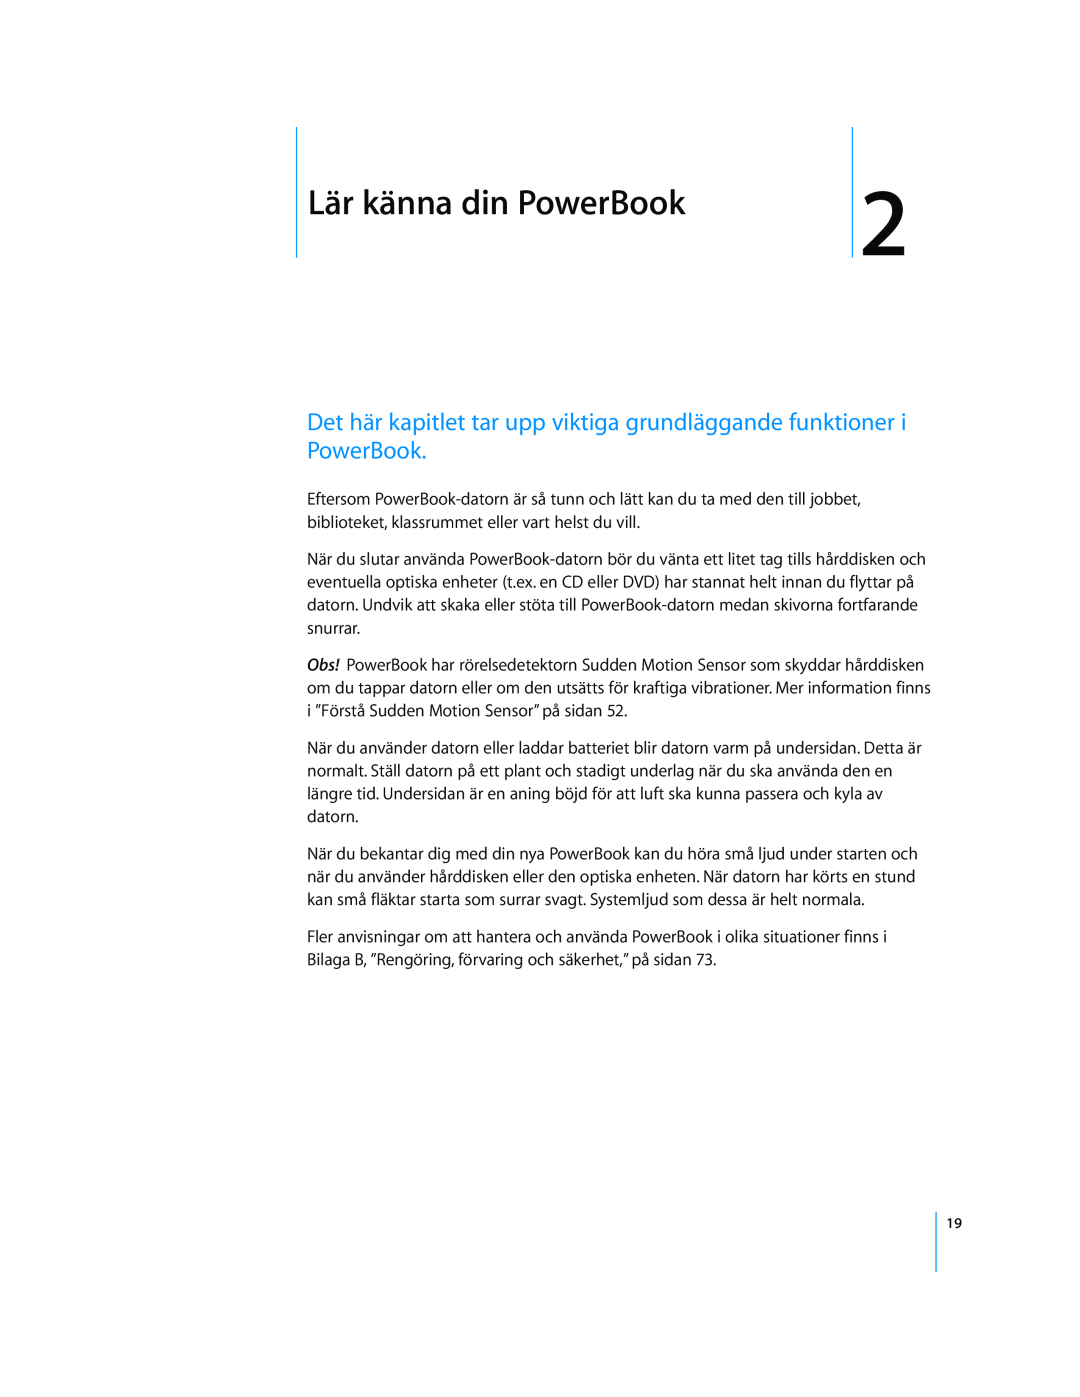 Apple G4 15-TUM manual Lär känna din PowerBook, Det här kapitlet tar upp viktiga grundläggande funktioner i PowerBook 